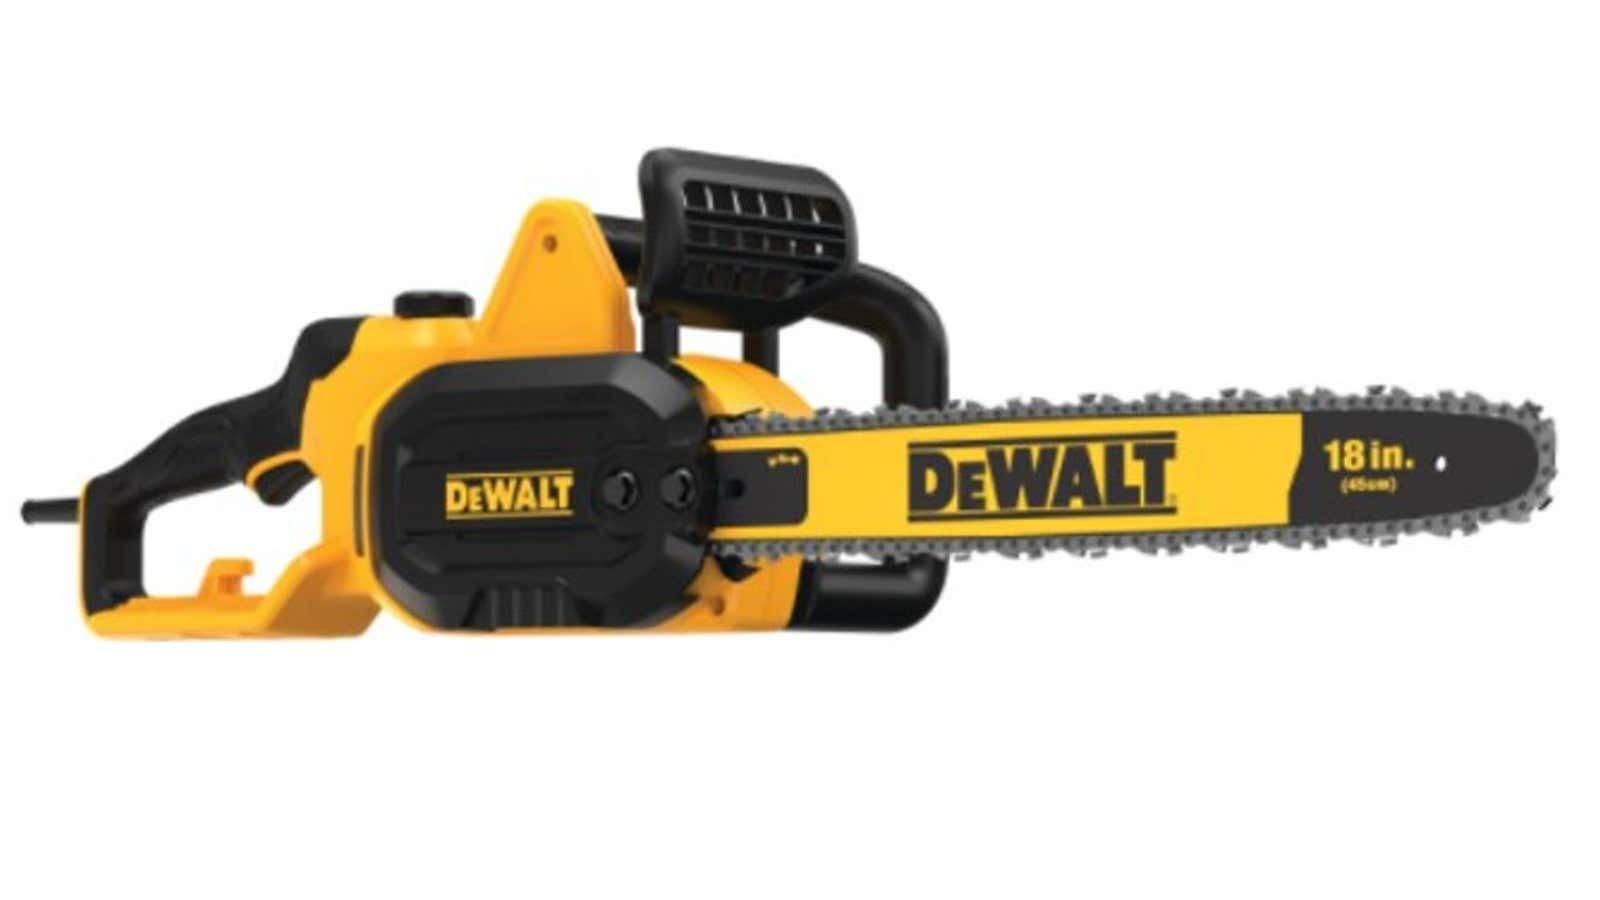 Recalled DeWalt chainsaw